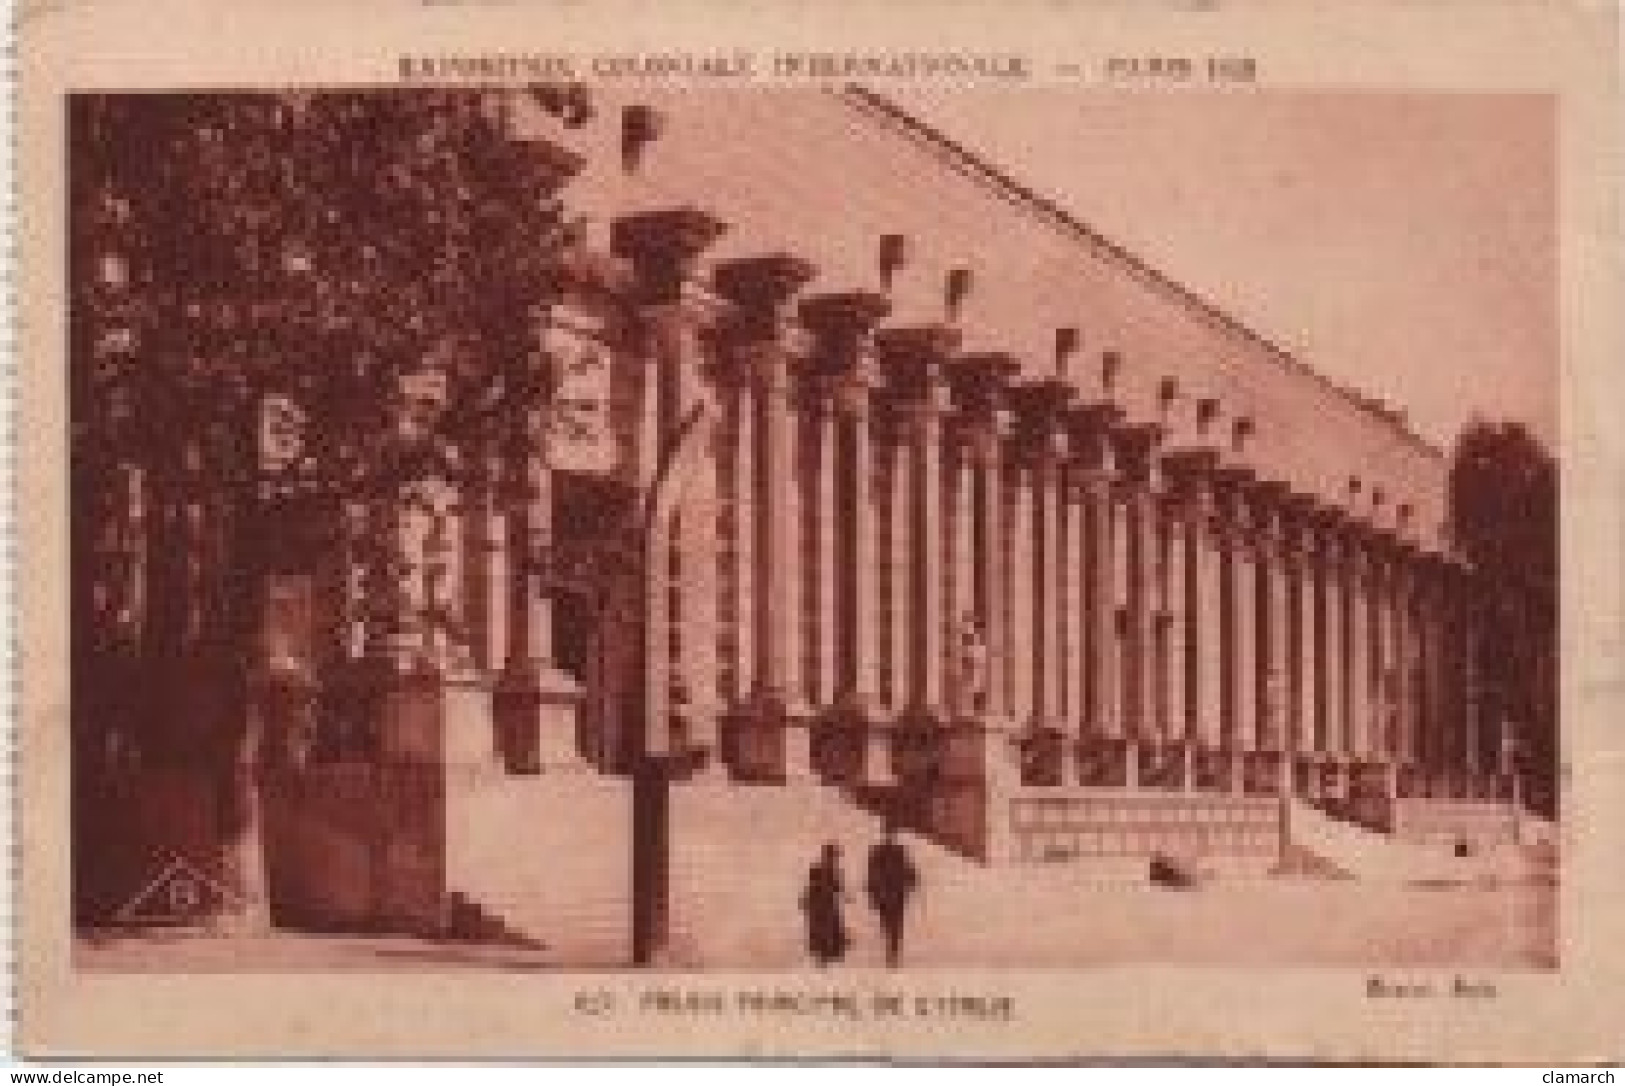 LOT de 124 CPSM de PARIS Exposition Coloniale de 1931-Toutes différentes-BE- frais d'envoi pour la F 6.30